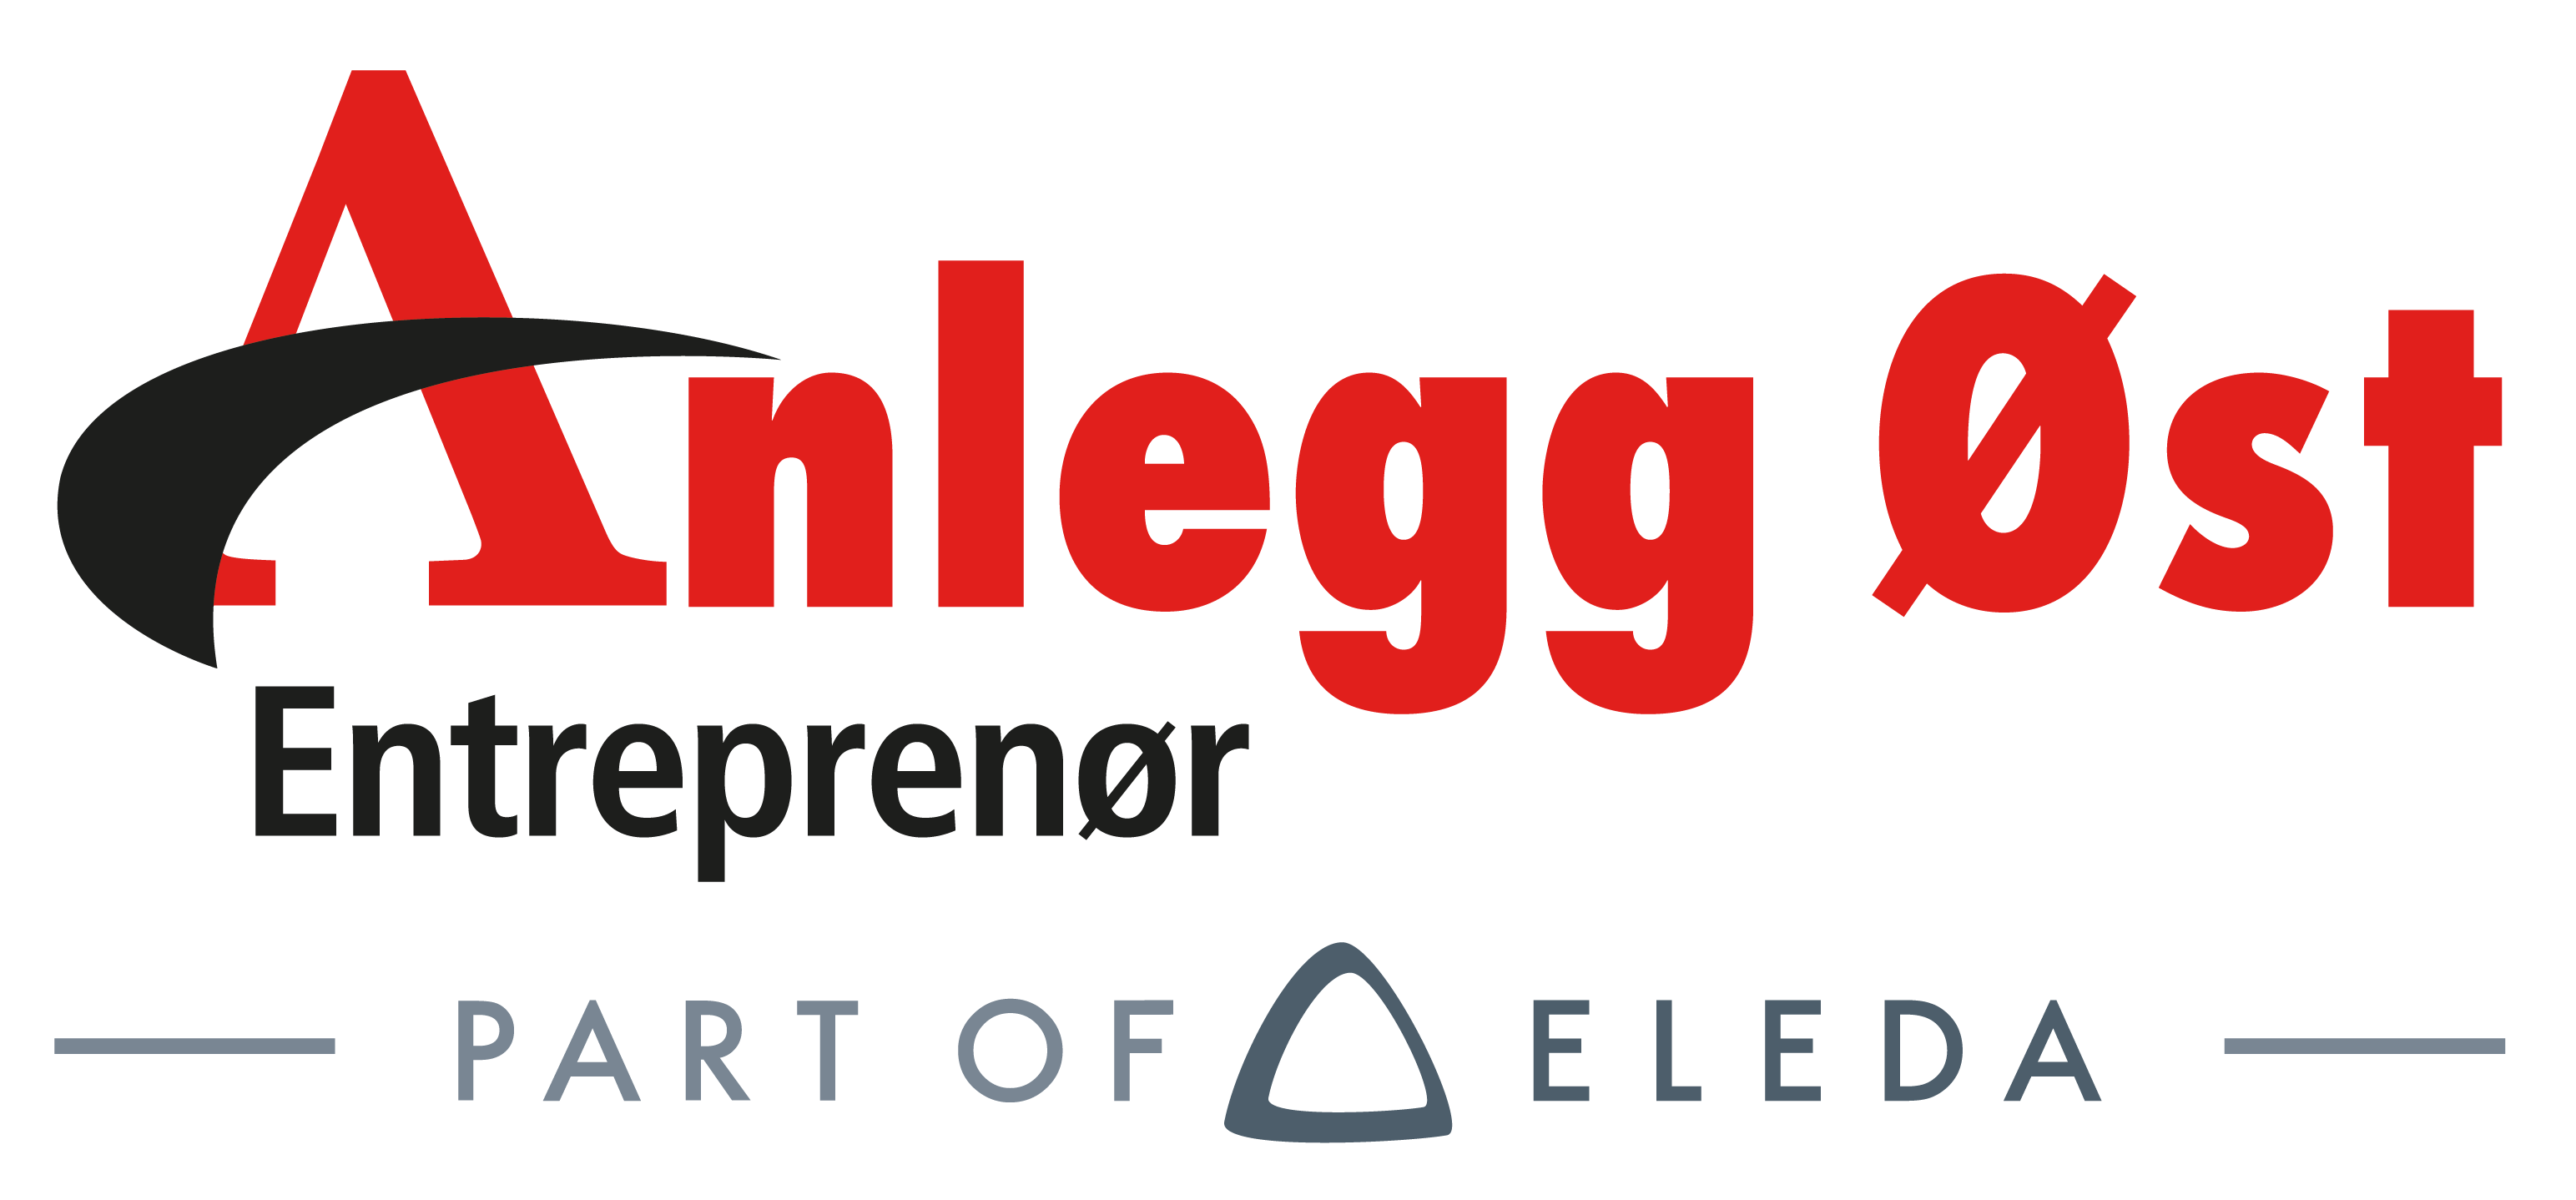 Anlegg Øst Entreprenør - Part of Eleda